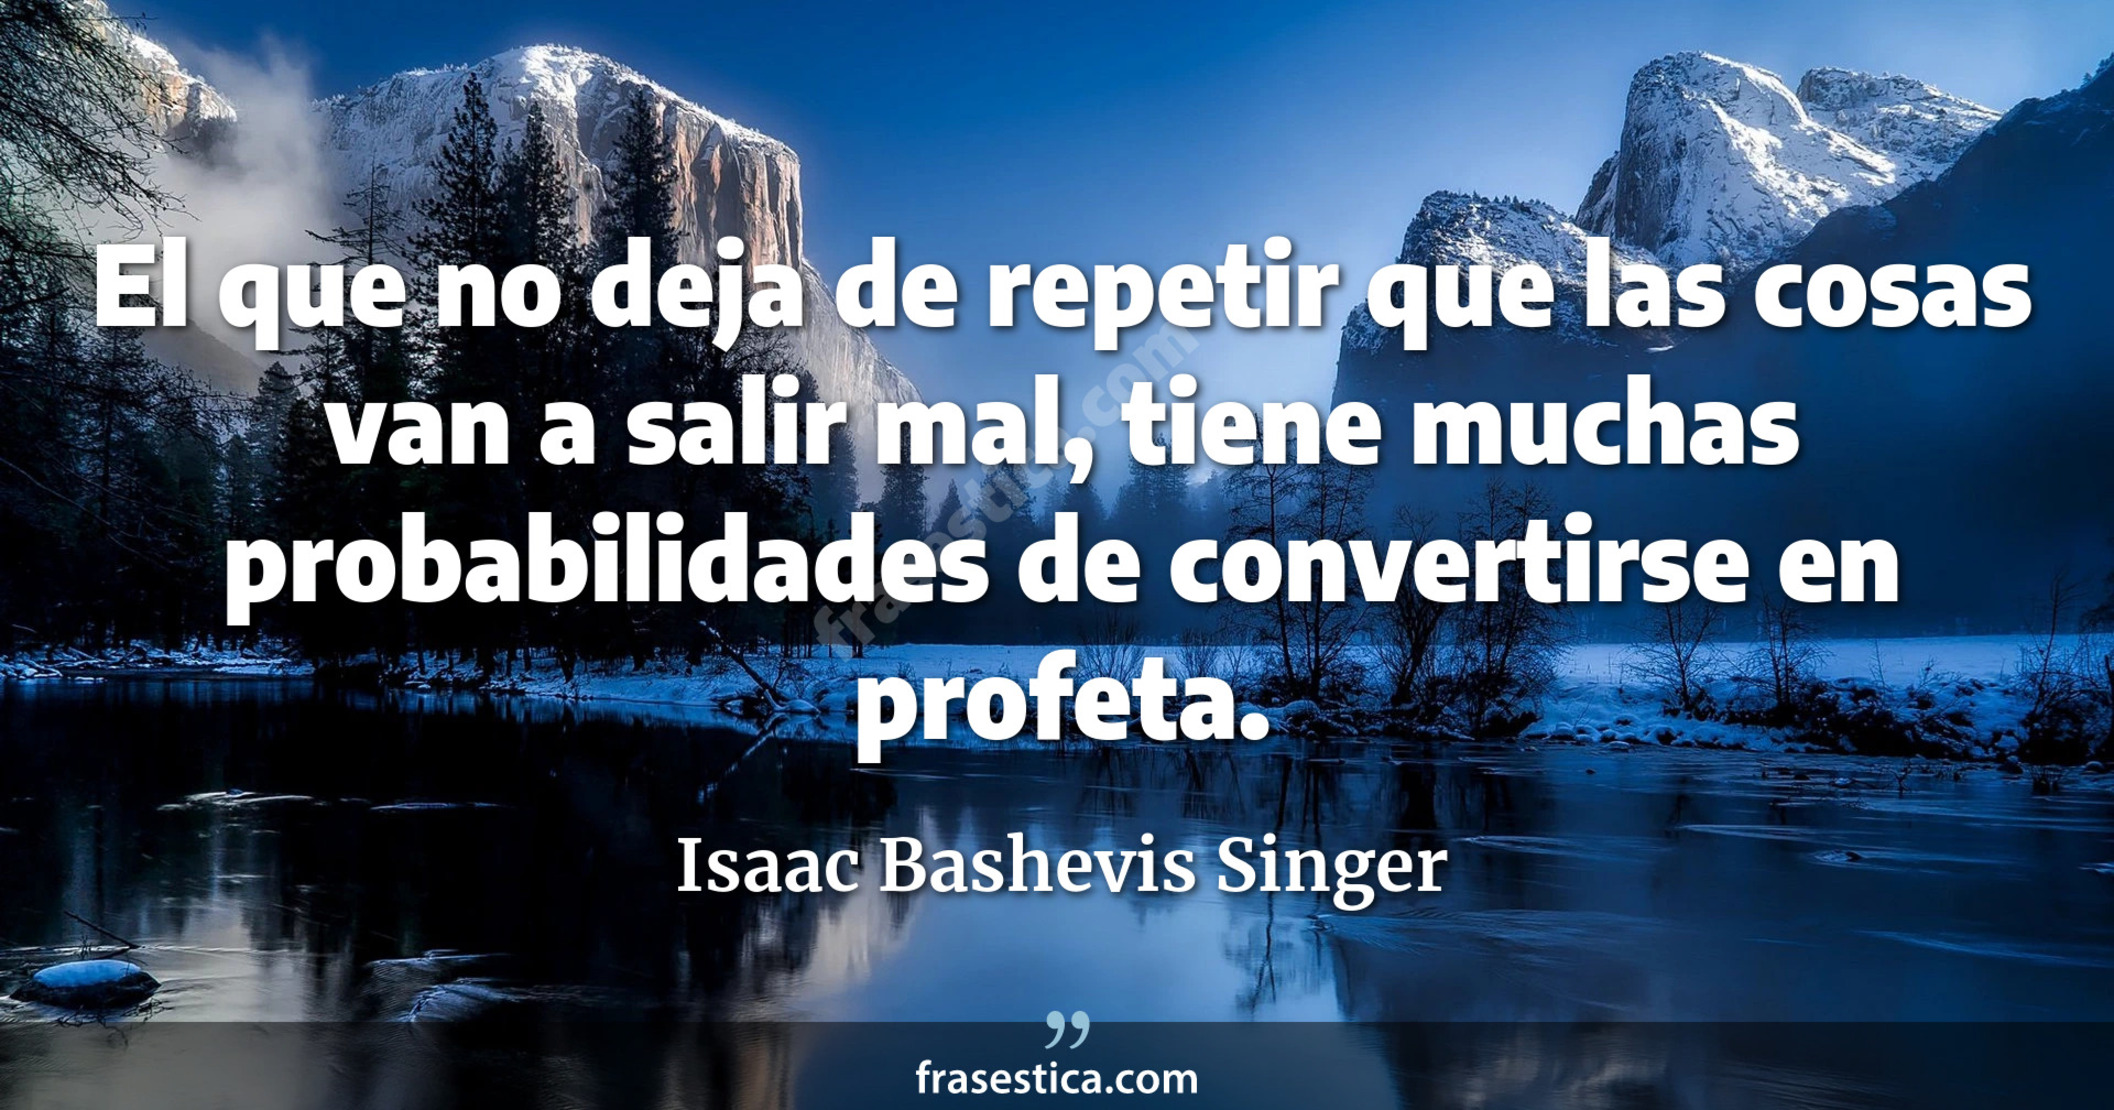 El que no deja de repetir que las cosas van a salir mal, tiene muchas probabilidades de convertirse en profeta. - Isaac Bashevis Singer